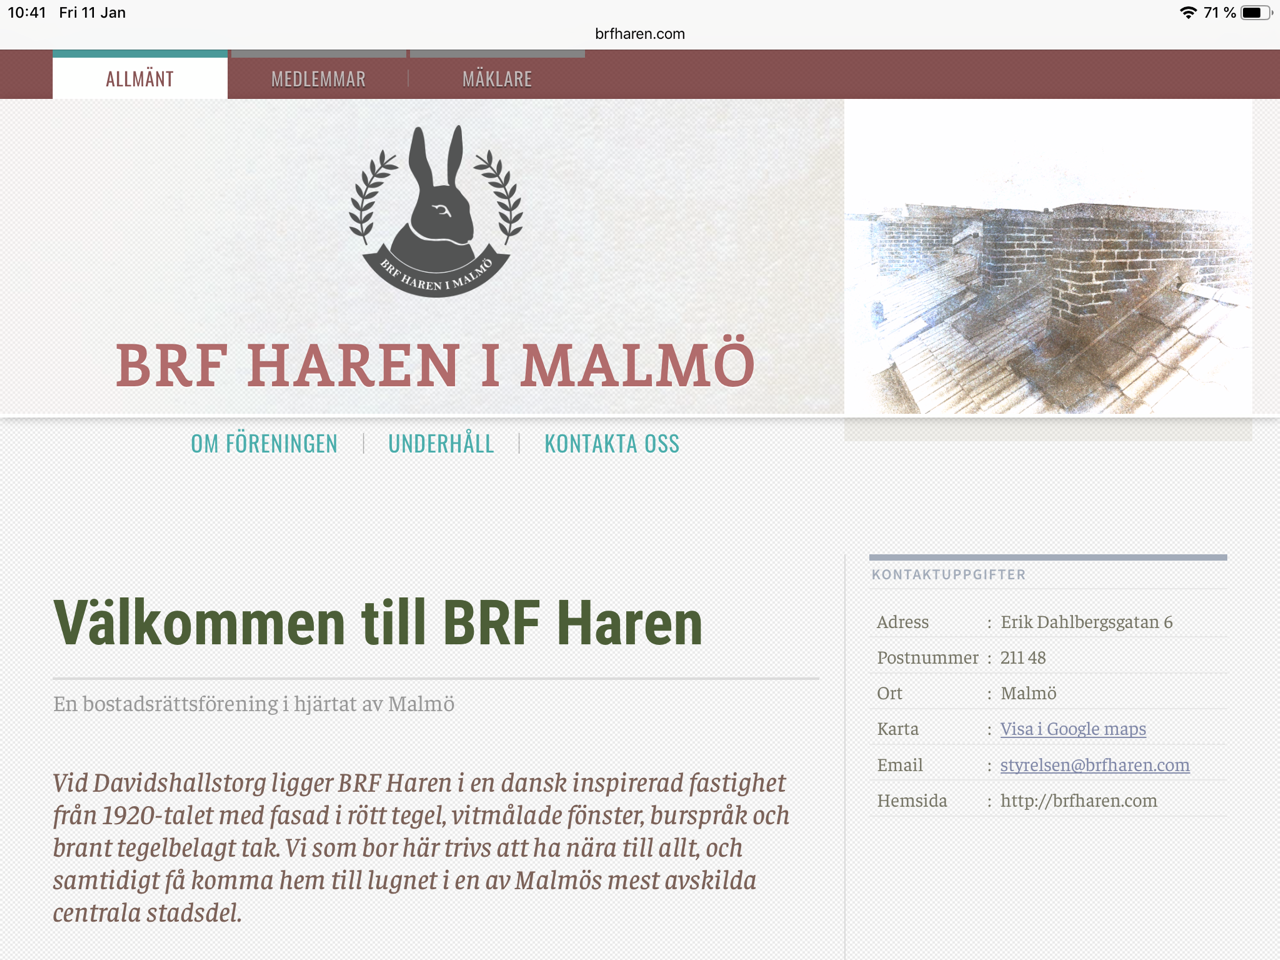 BRF Haren webpage